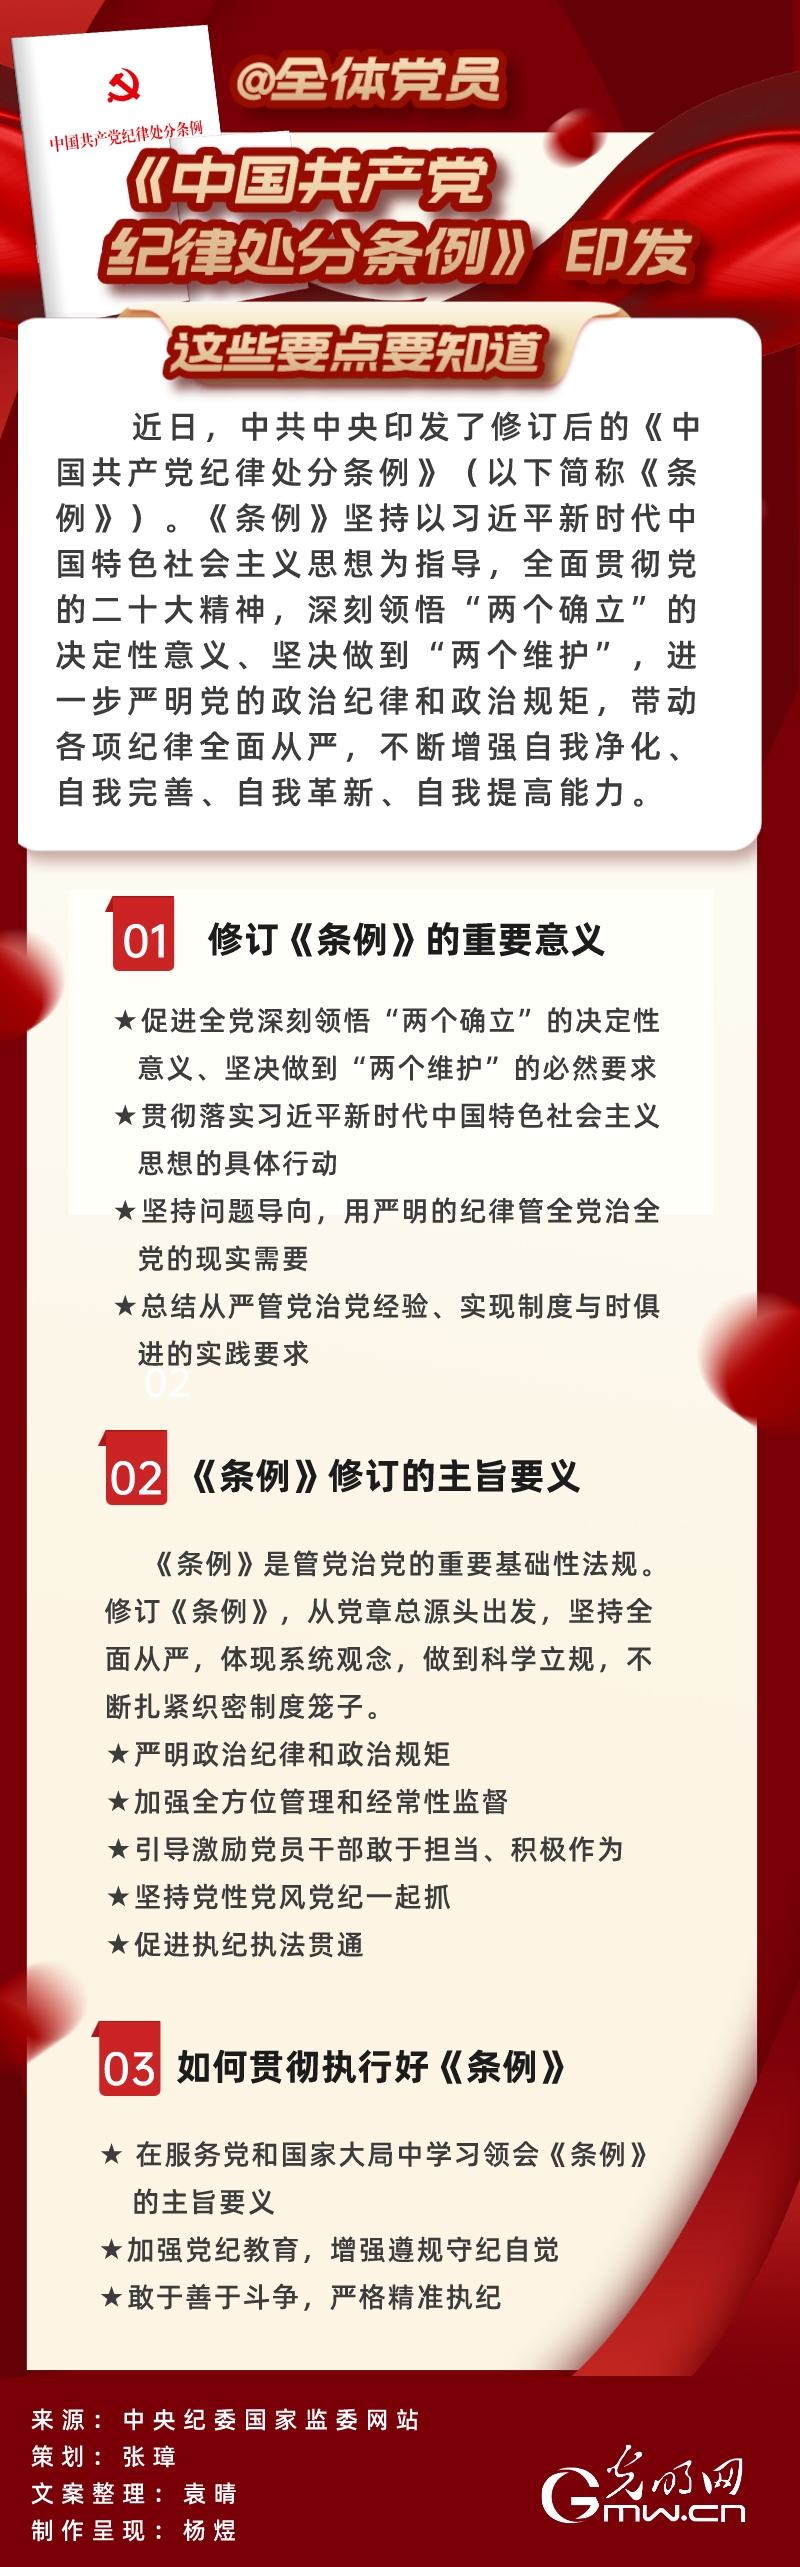 【图解】@全体党员 《中国共产党纪律处分条例》印发 这些要点要知道